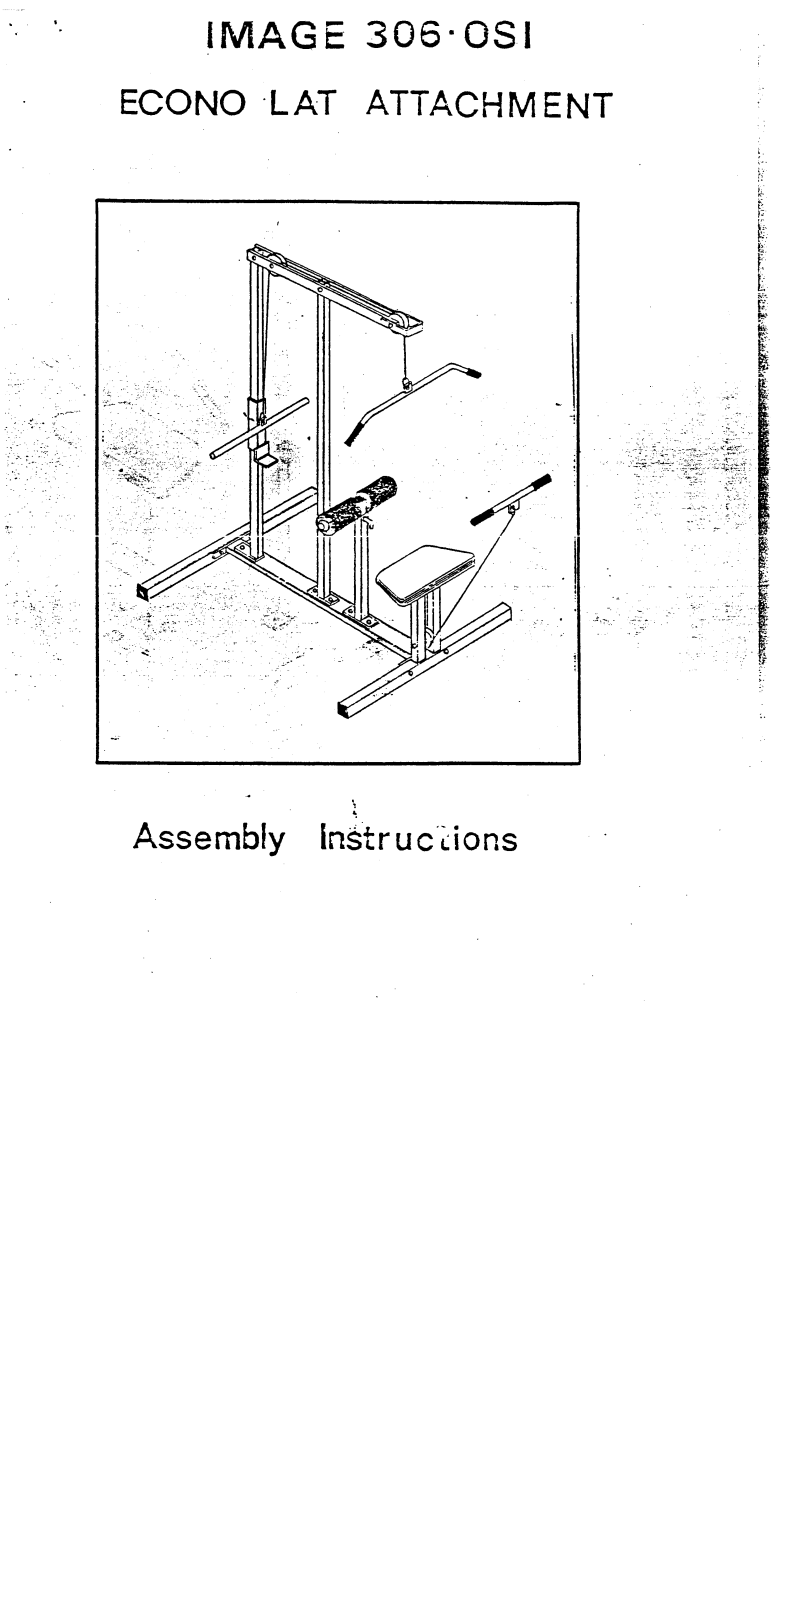 Image IM3060 Assembly Instruction